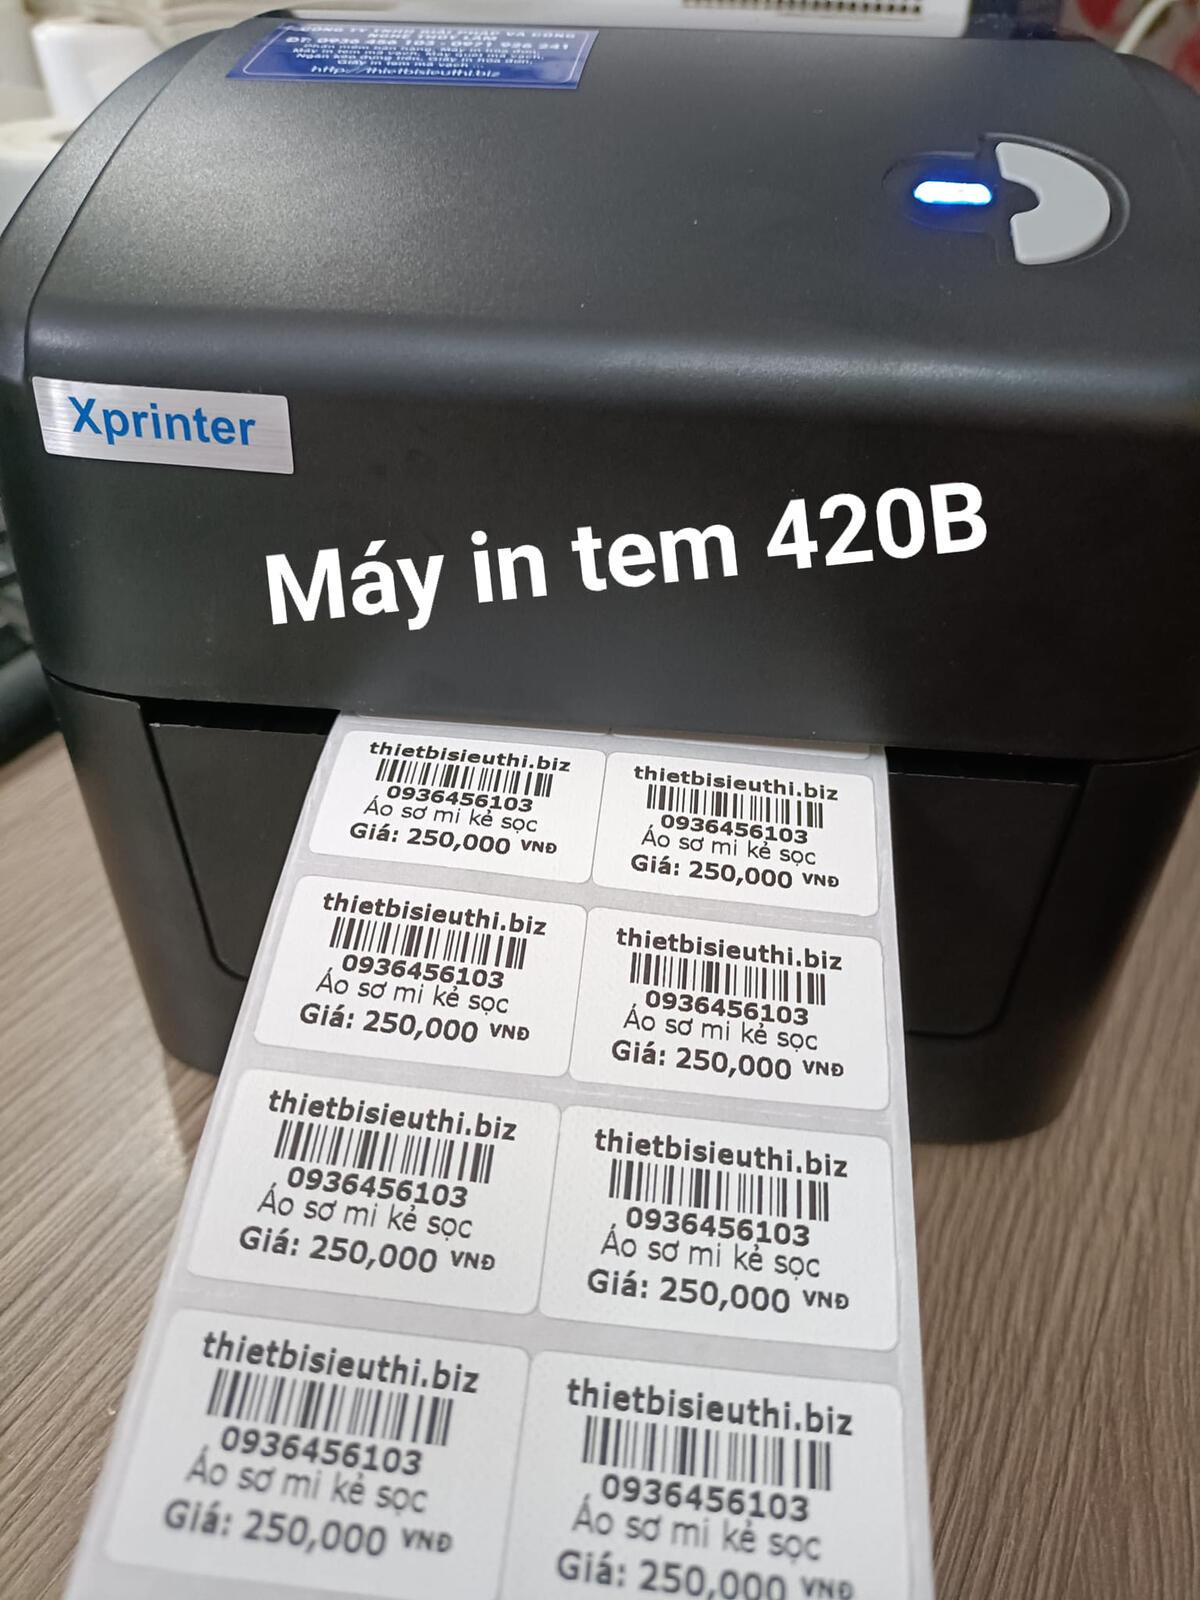 Làm thế nào để cấu hình máy in Xprinter 420B để in tem mã vạch? 
